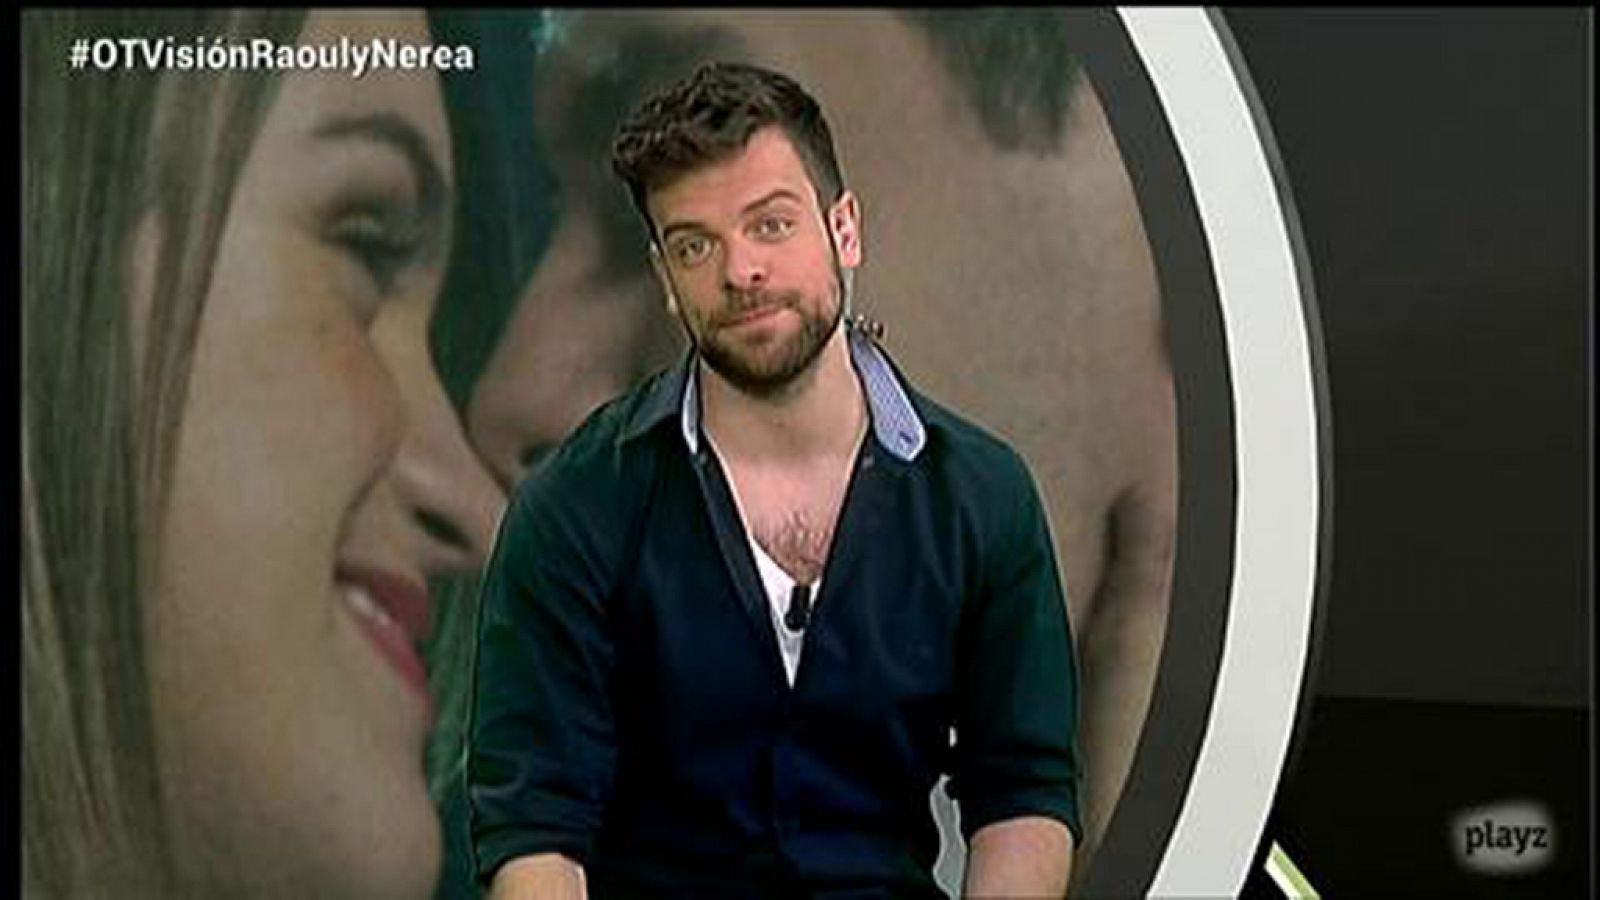 OTVisión - Ricky nos habla sobre las semifinales del Festival de Eurovisión